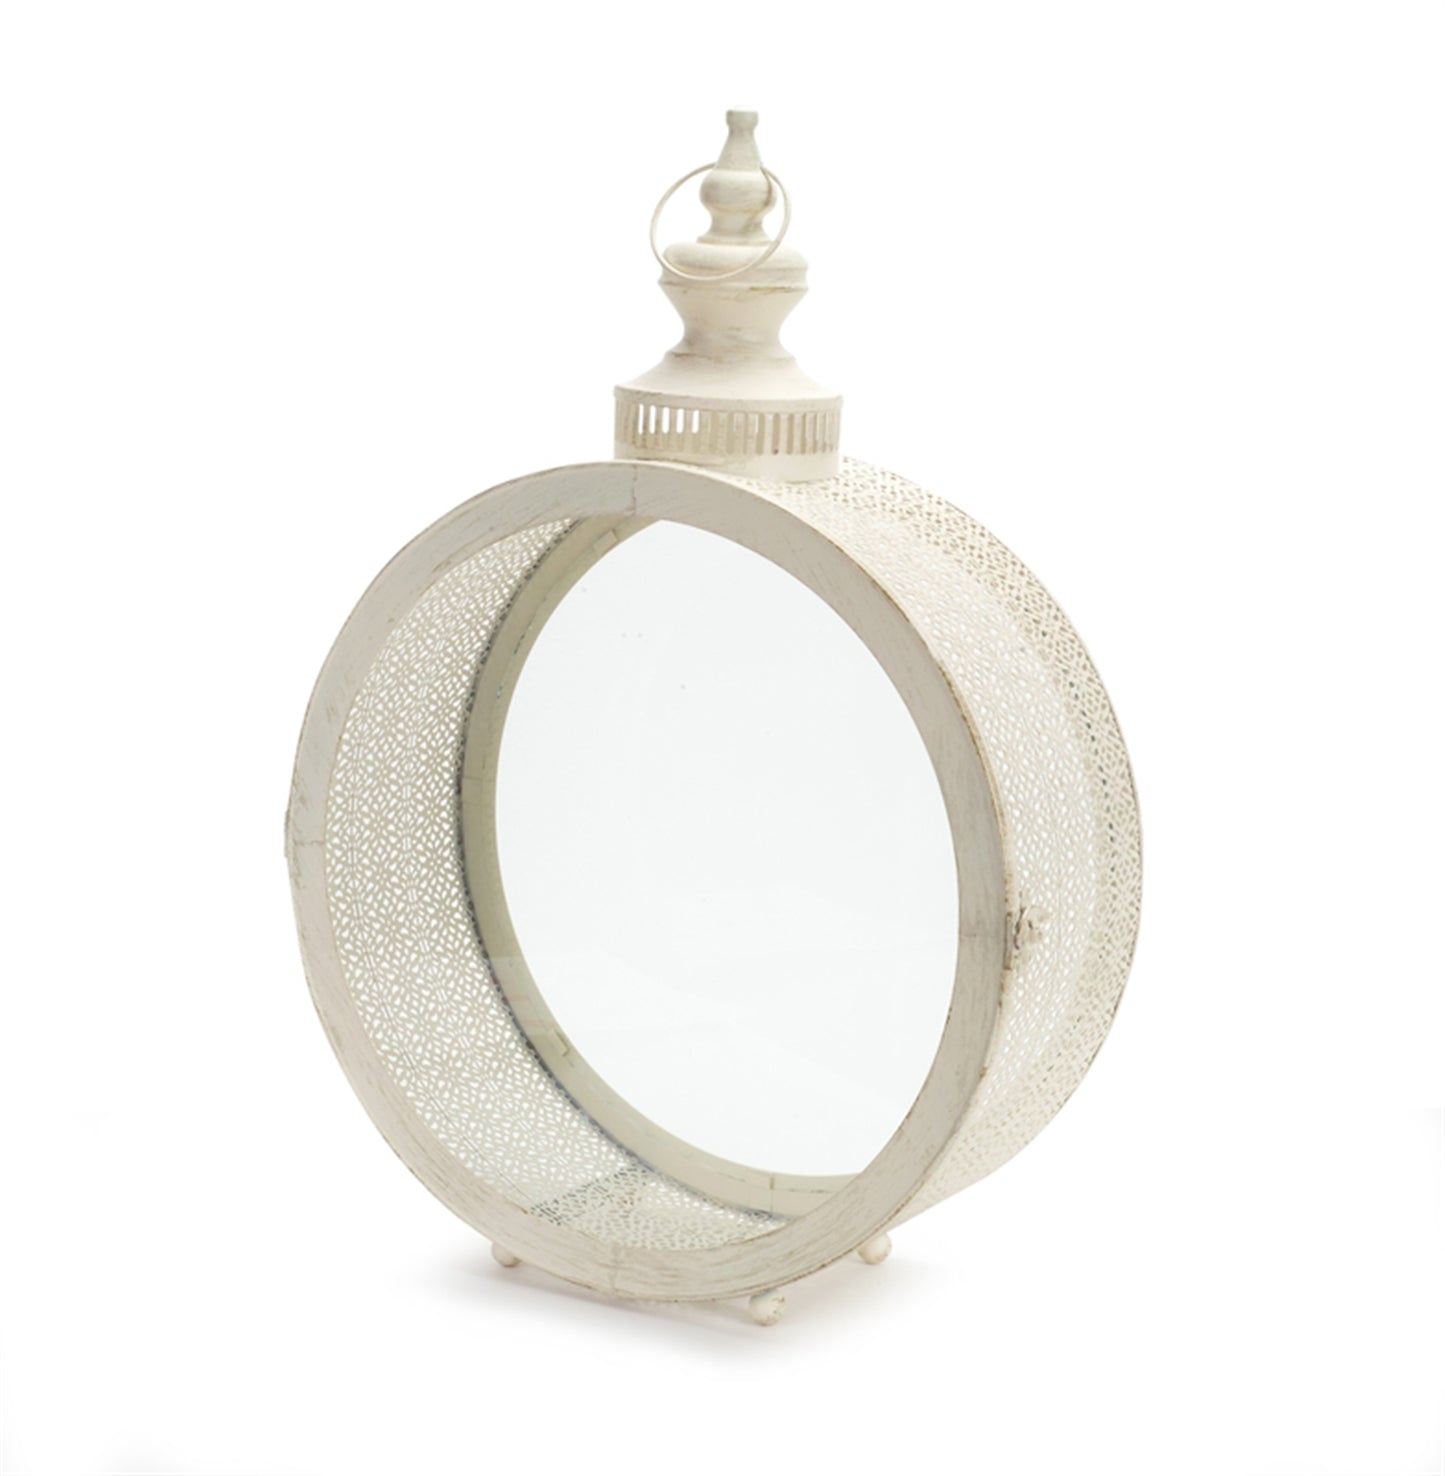 Ivory Ornate Metal Circle Lantern 22"D